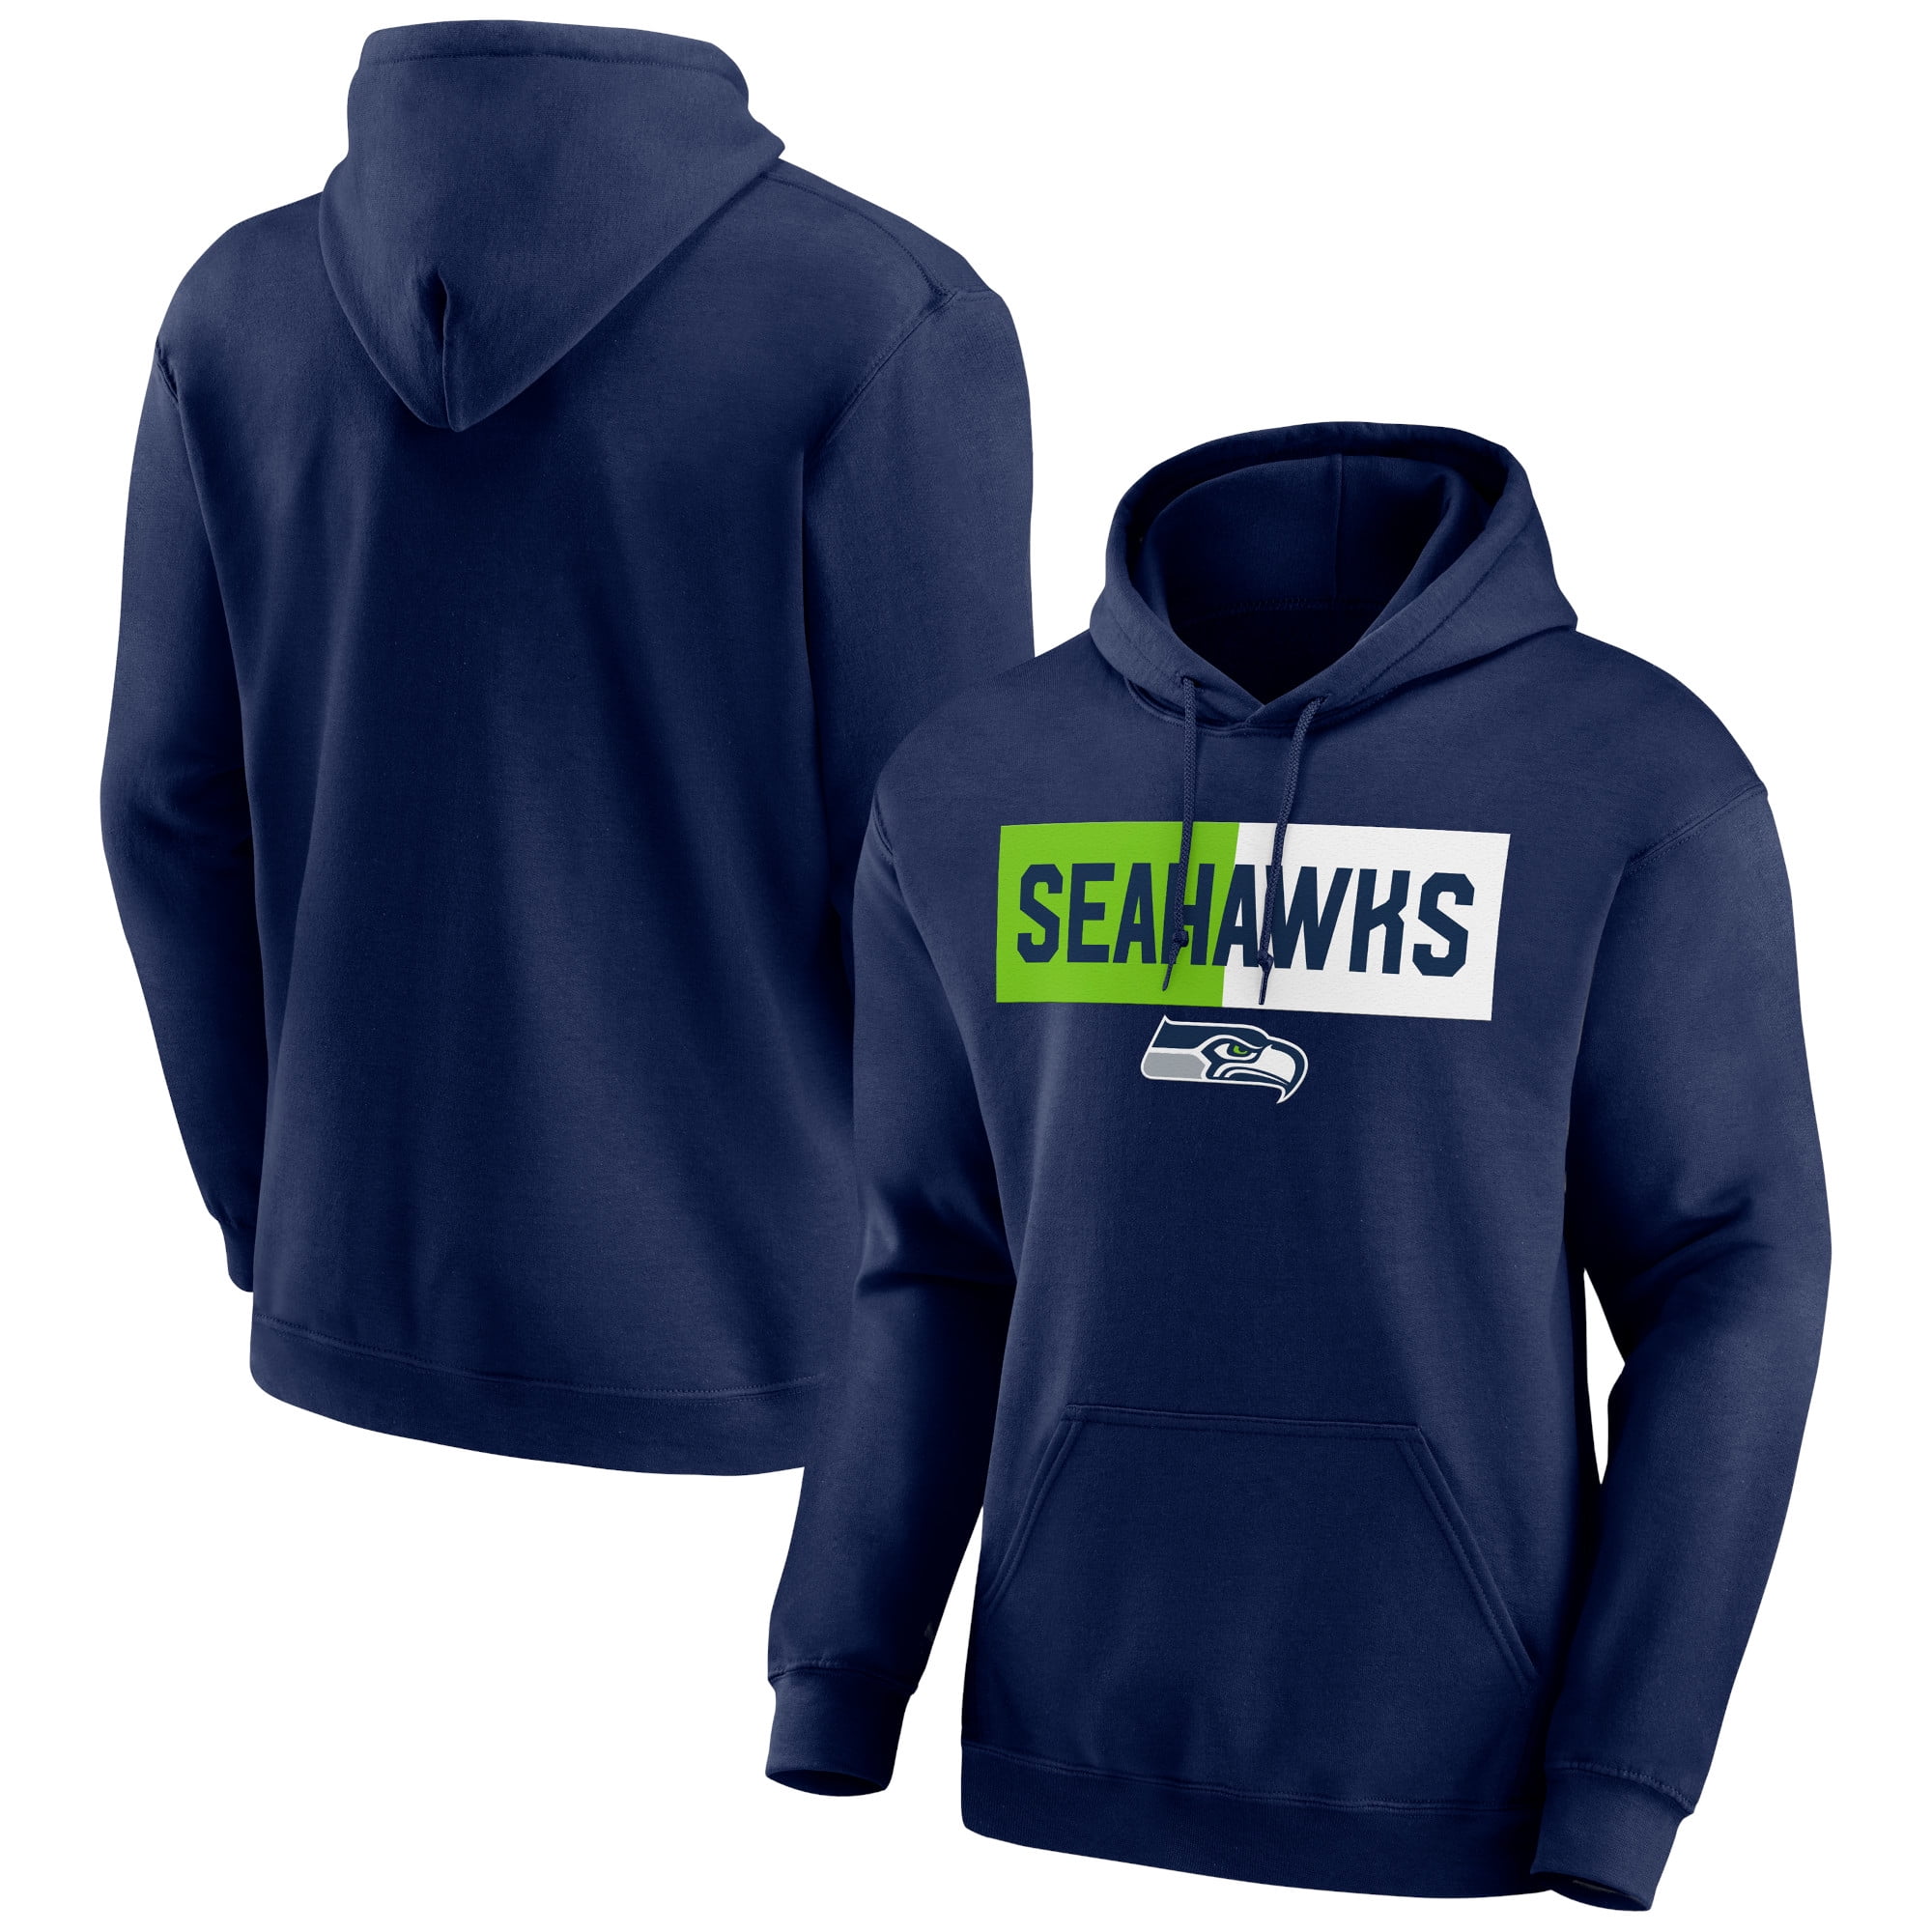 Seattle Seahawks Sweatshirts - Walmart.com